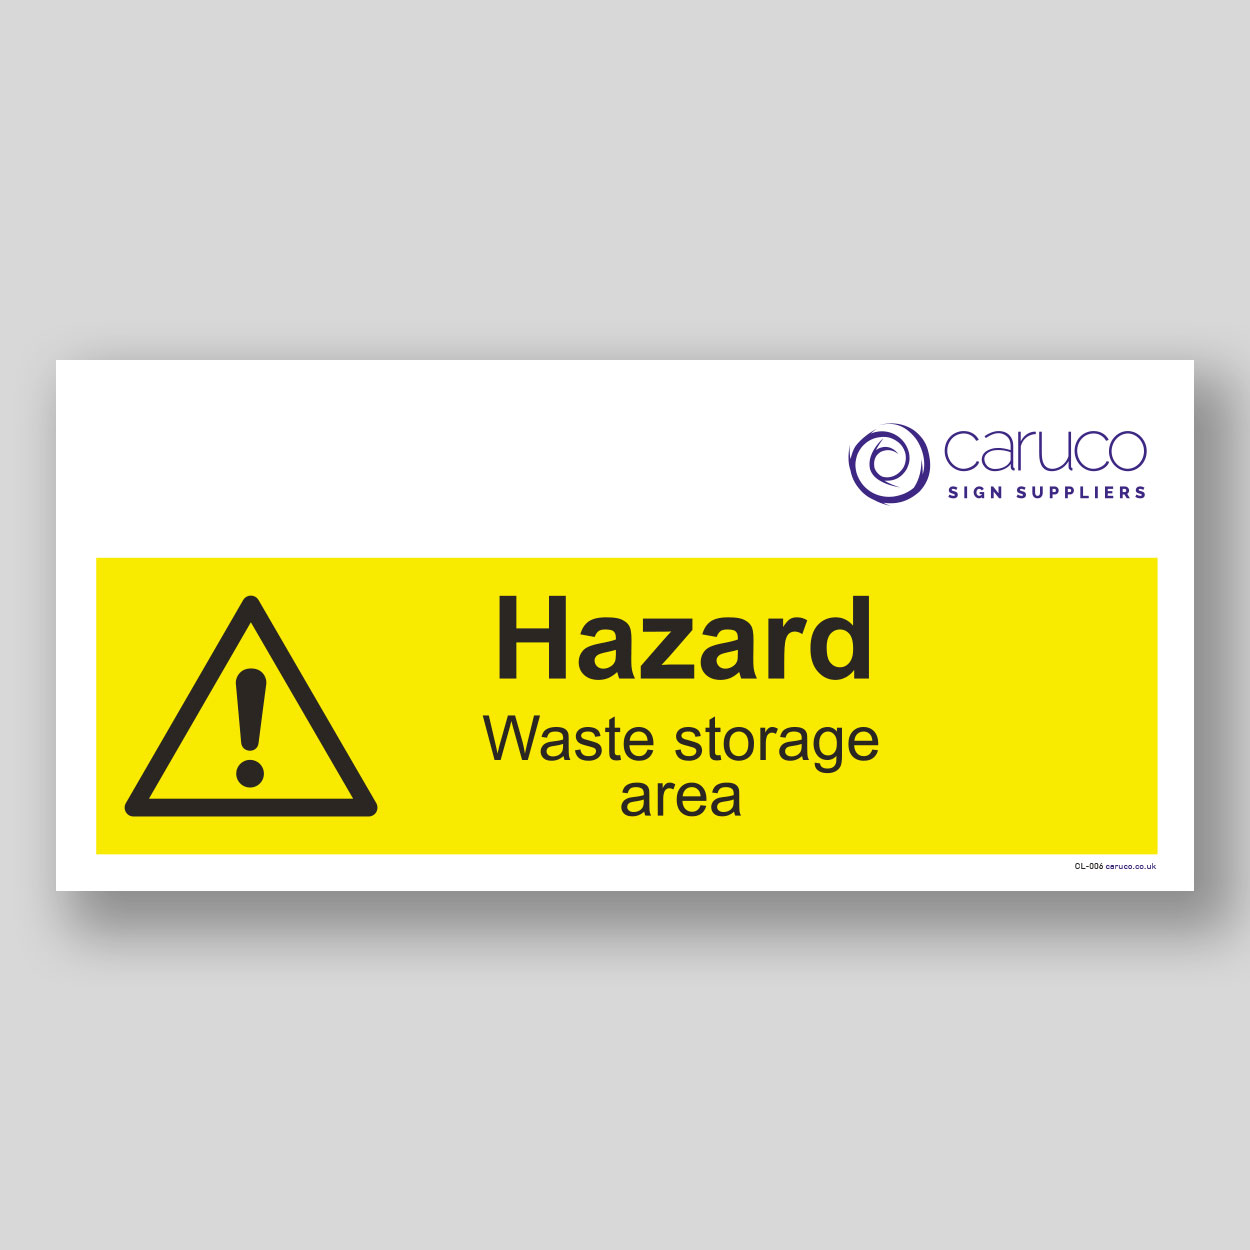 CL-006 Hazard - waste storage